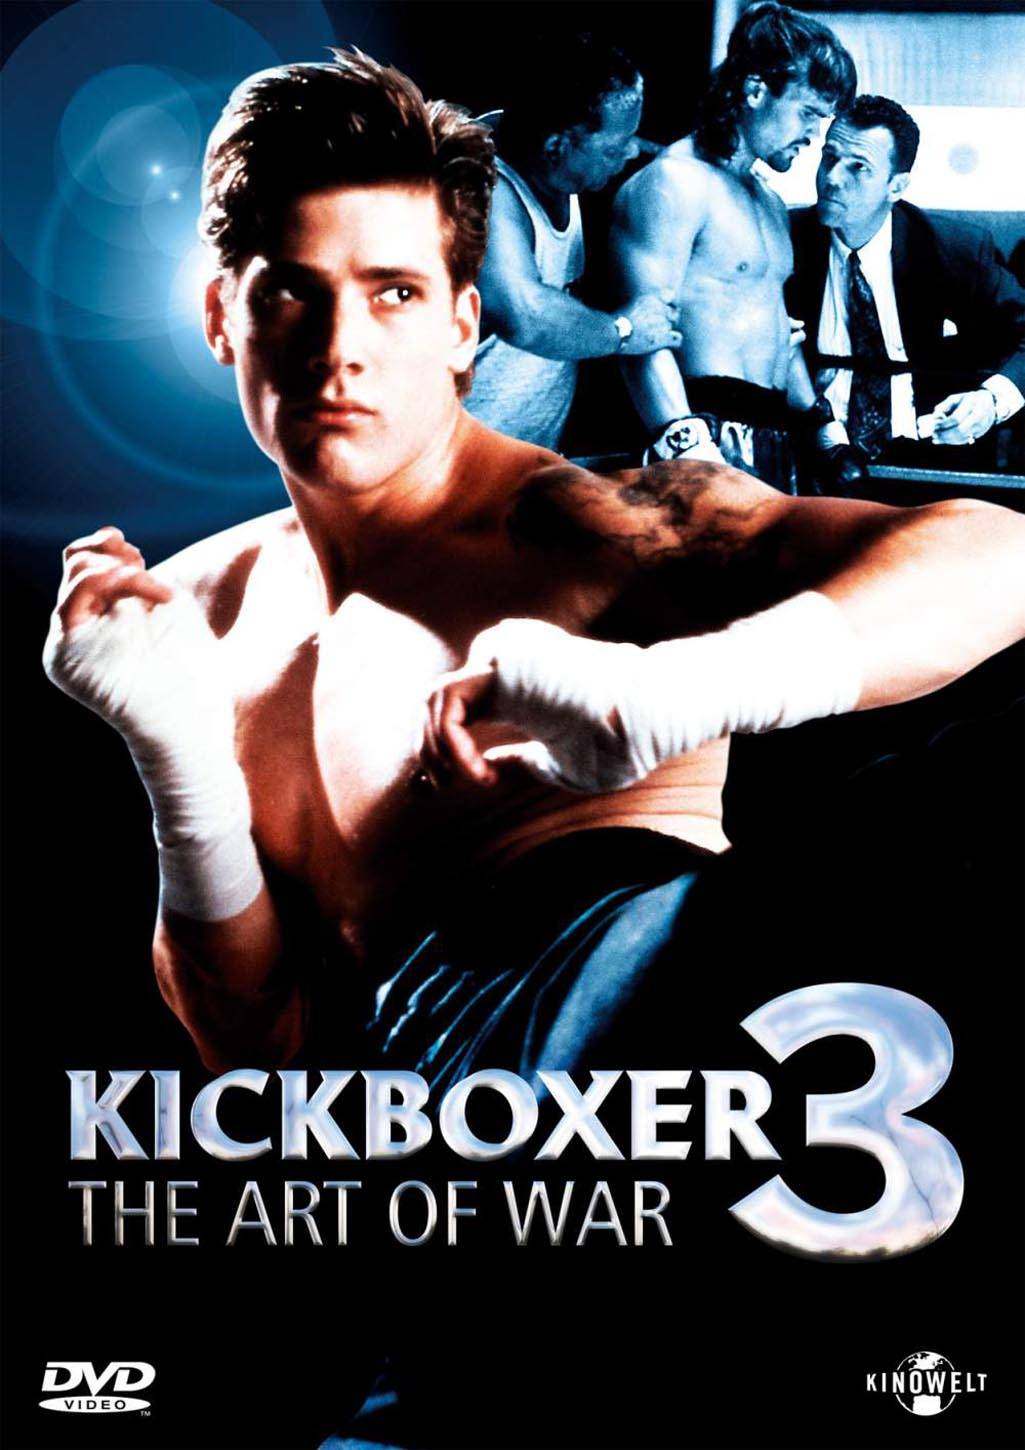 Кикбоксер 3: Искусство войны / Kickboxer 3: The Art of War (1992) отзывы. Рецензии. Новости кино. Актеры фильма Кикбоксер 3: Искусство войны. Отзывы о фильме Кикбоксер 3: Искусство войны